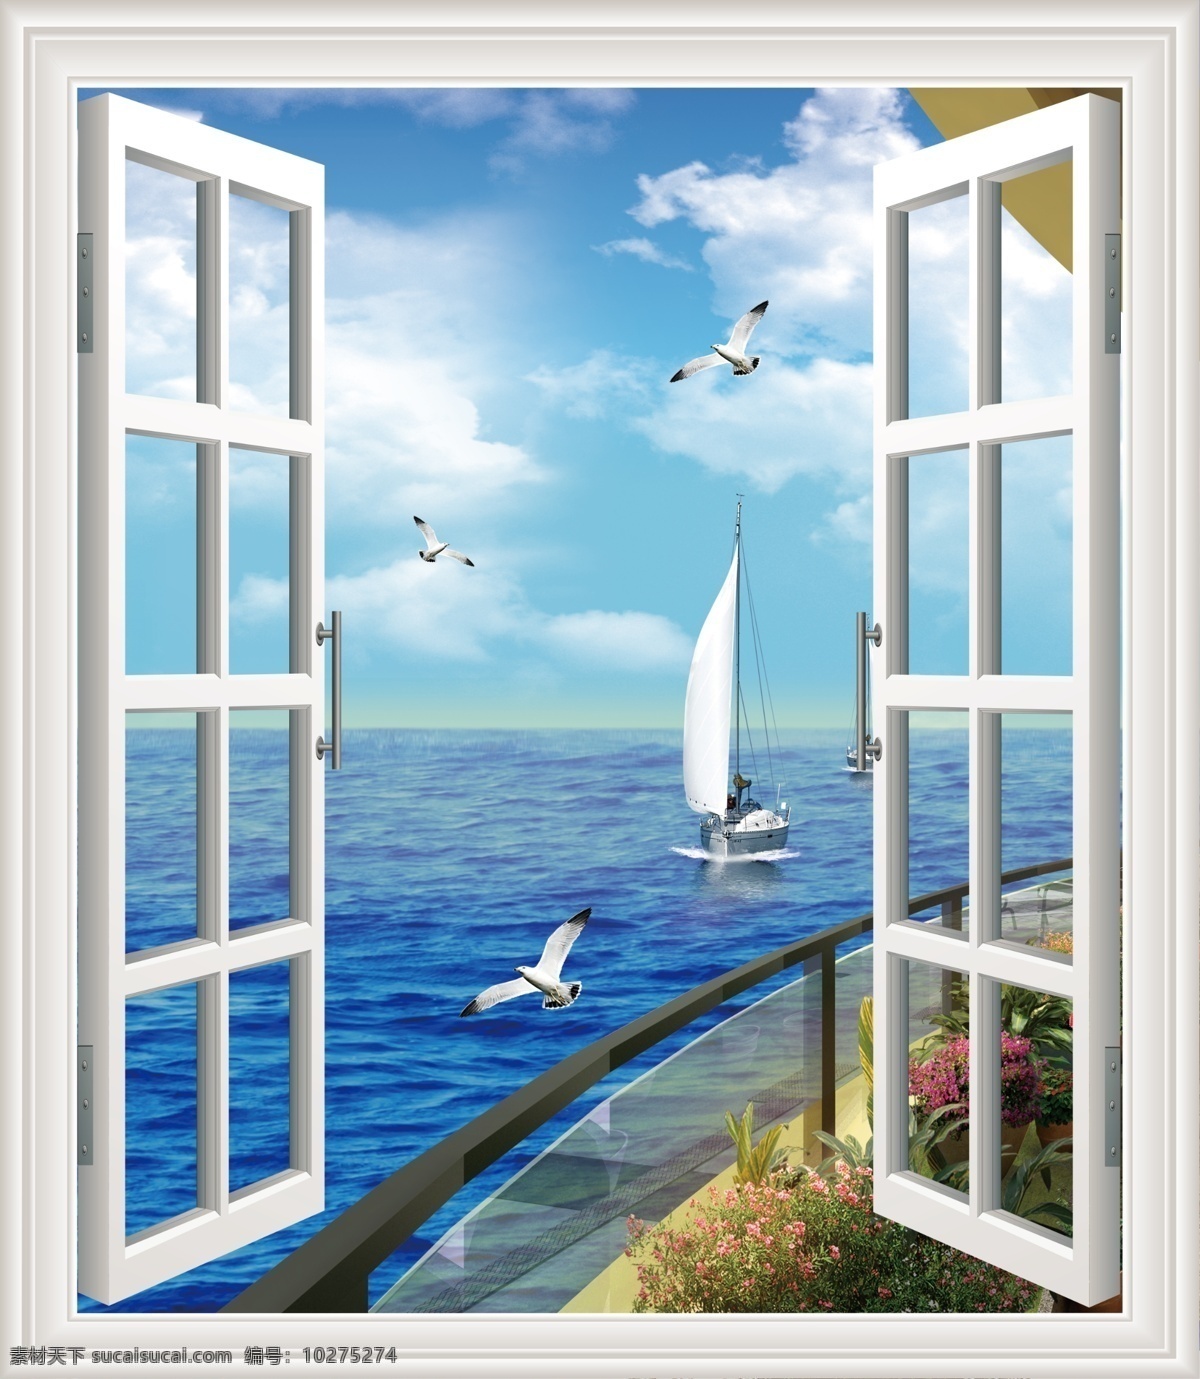 窗外风景 假窗 窗户 海景 天空 云彩 海鸥 海 家居 门窗 画 分层